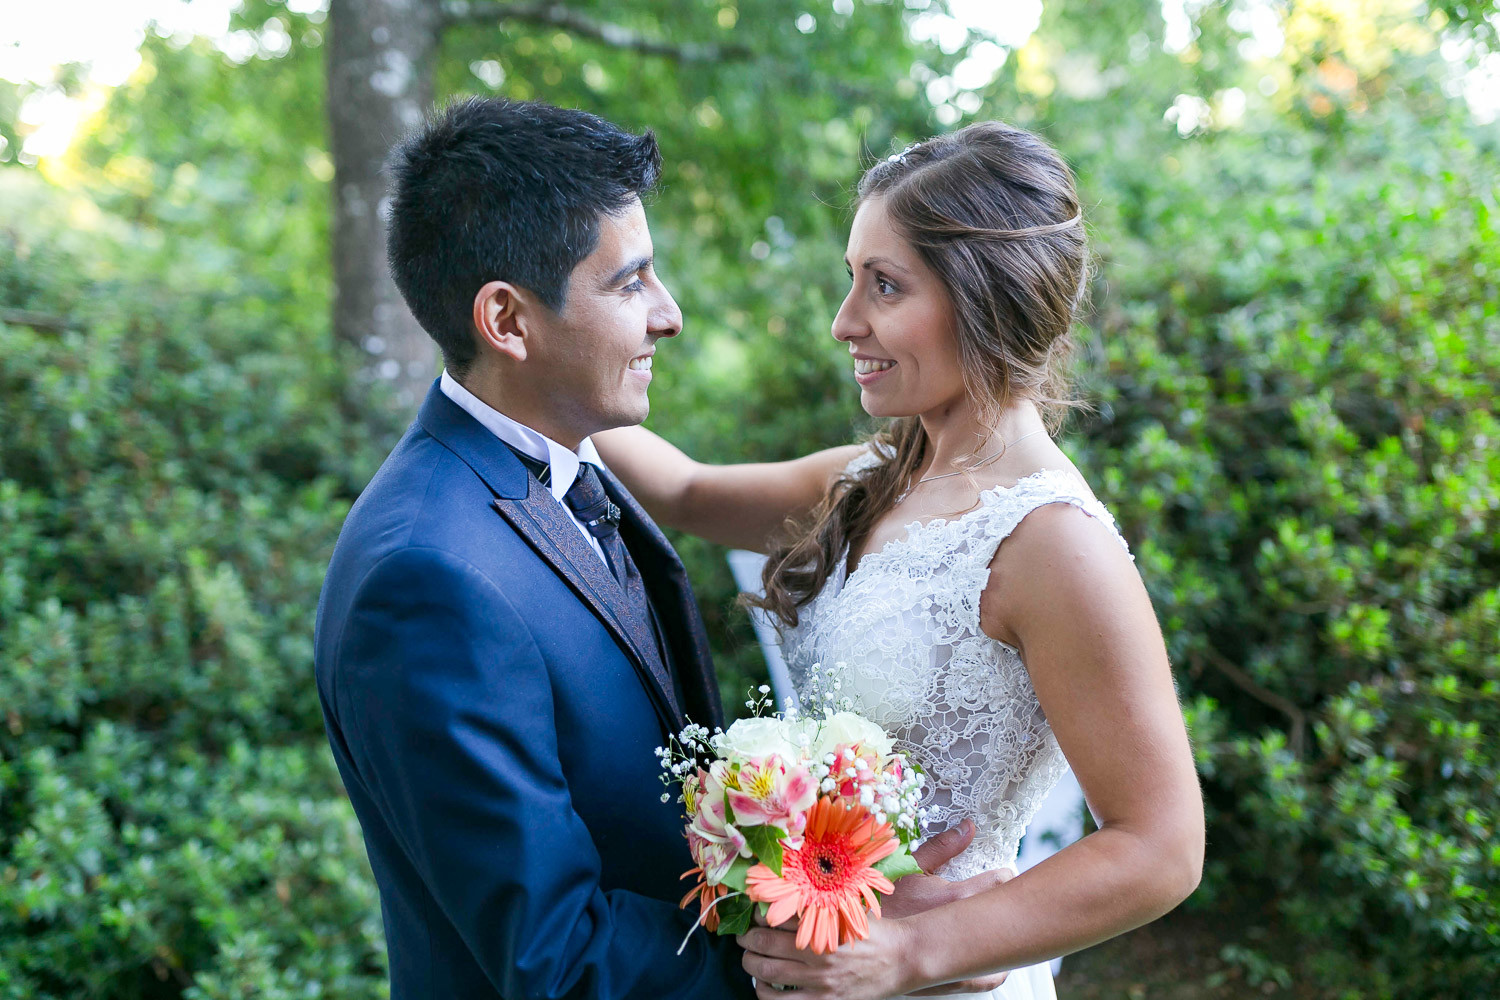 pareja de novios en el dia de su boda el hombre vistiendo un traje de novio color azul marino y la mujer con vestido de novia blanco y ramo de flores en manos